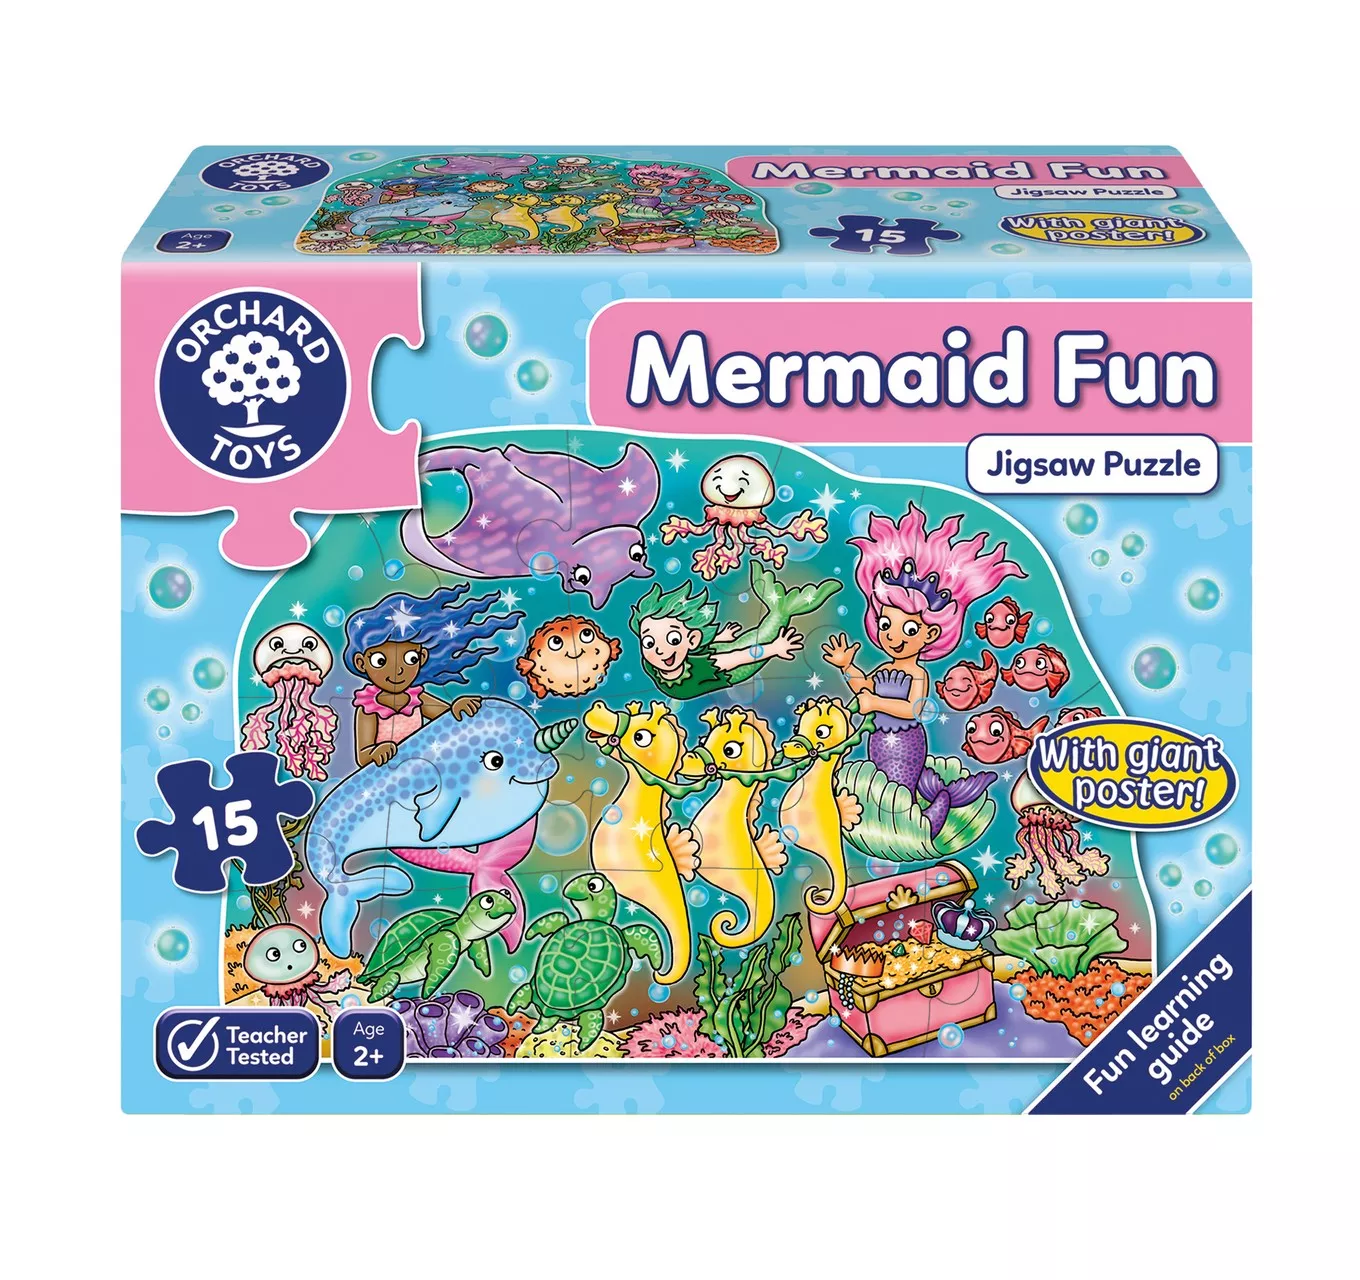 Mermaid Fun Puzzle